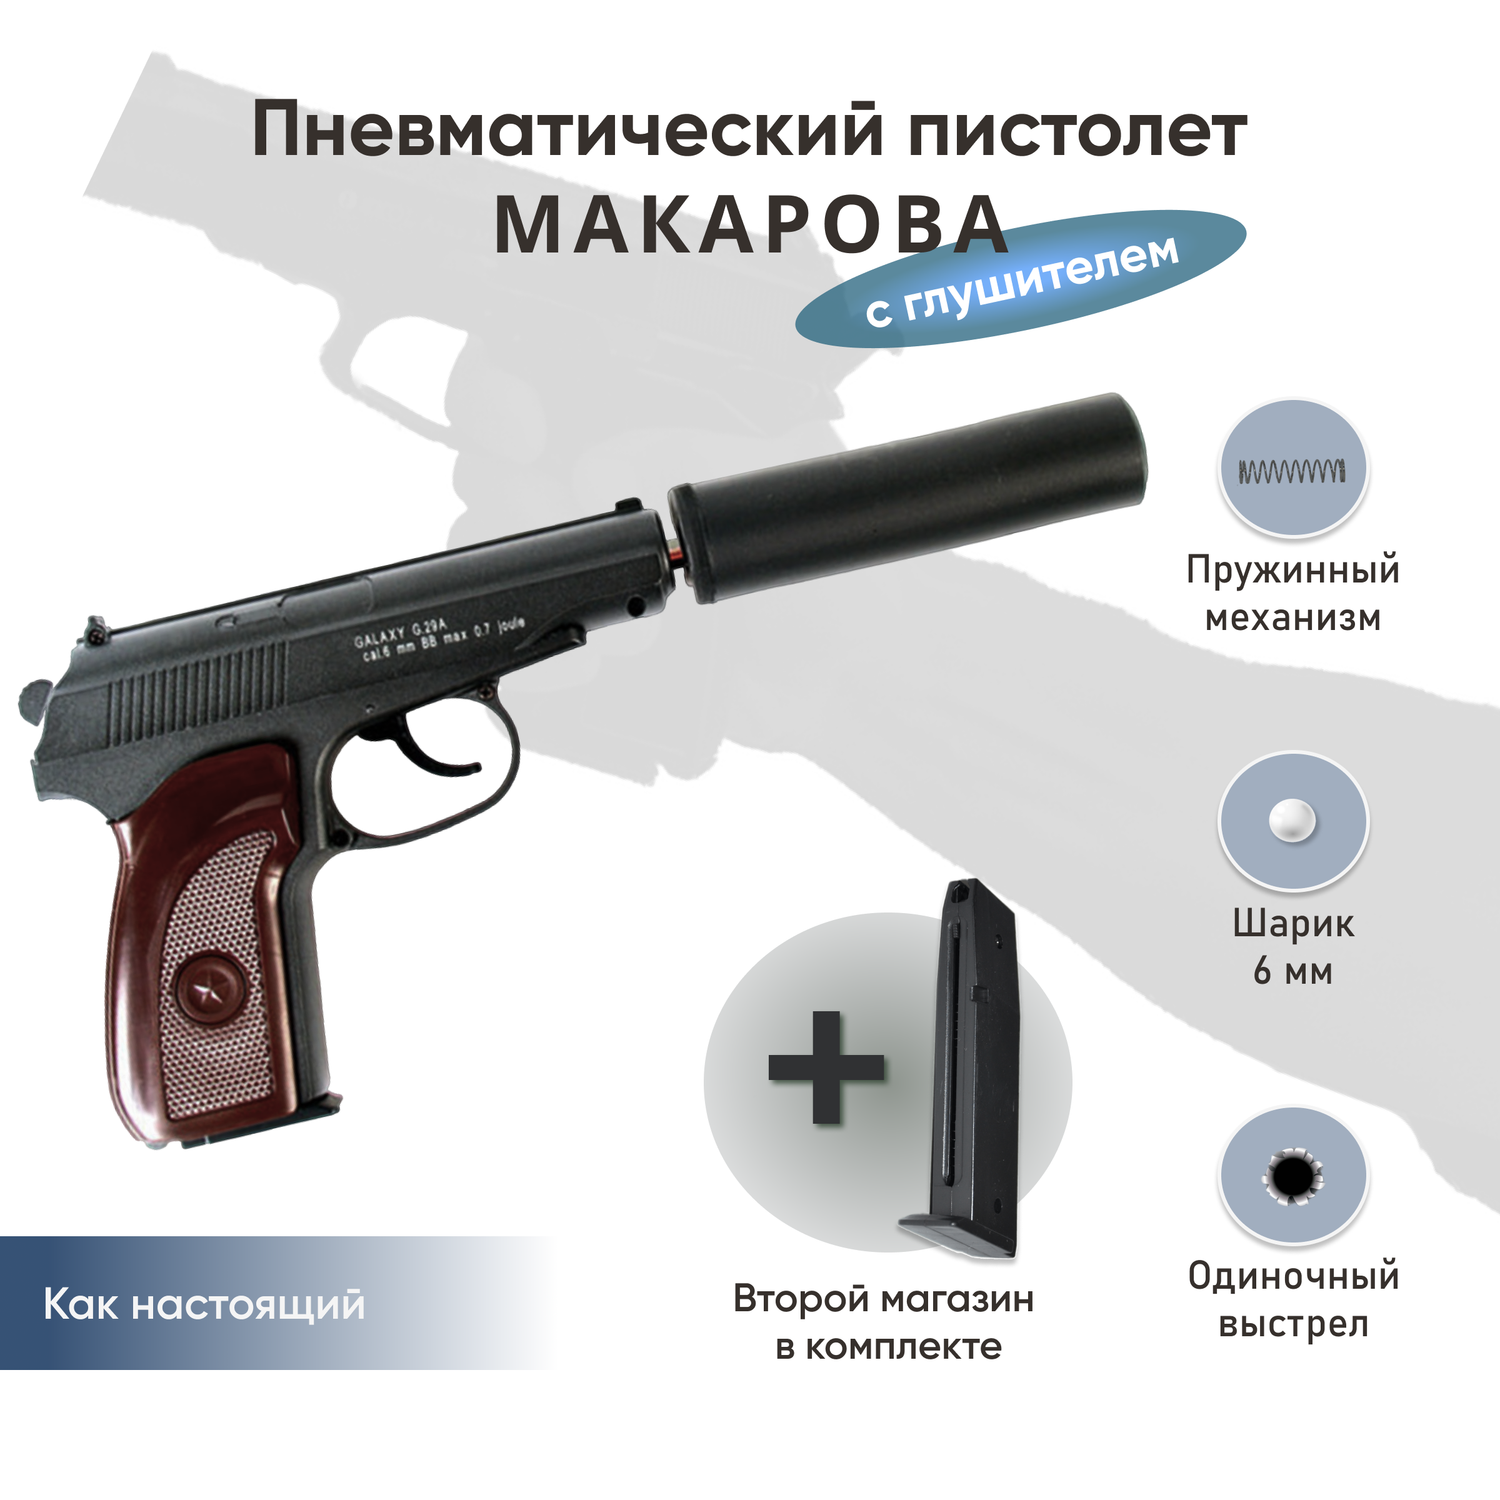 Пистолет Galaxy Макарова с глушителем и второй магазин - фото 2